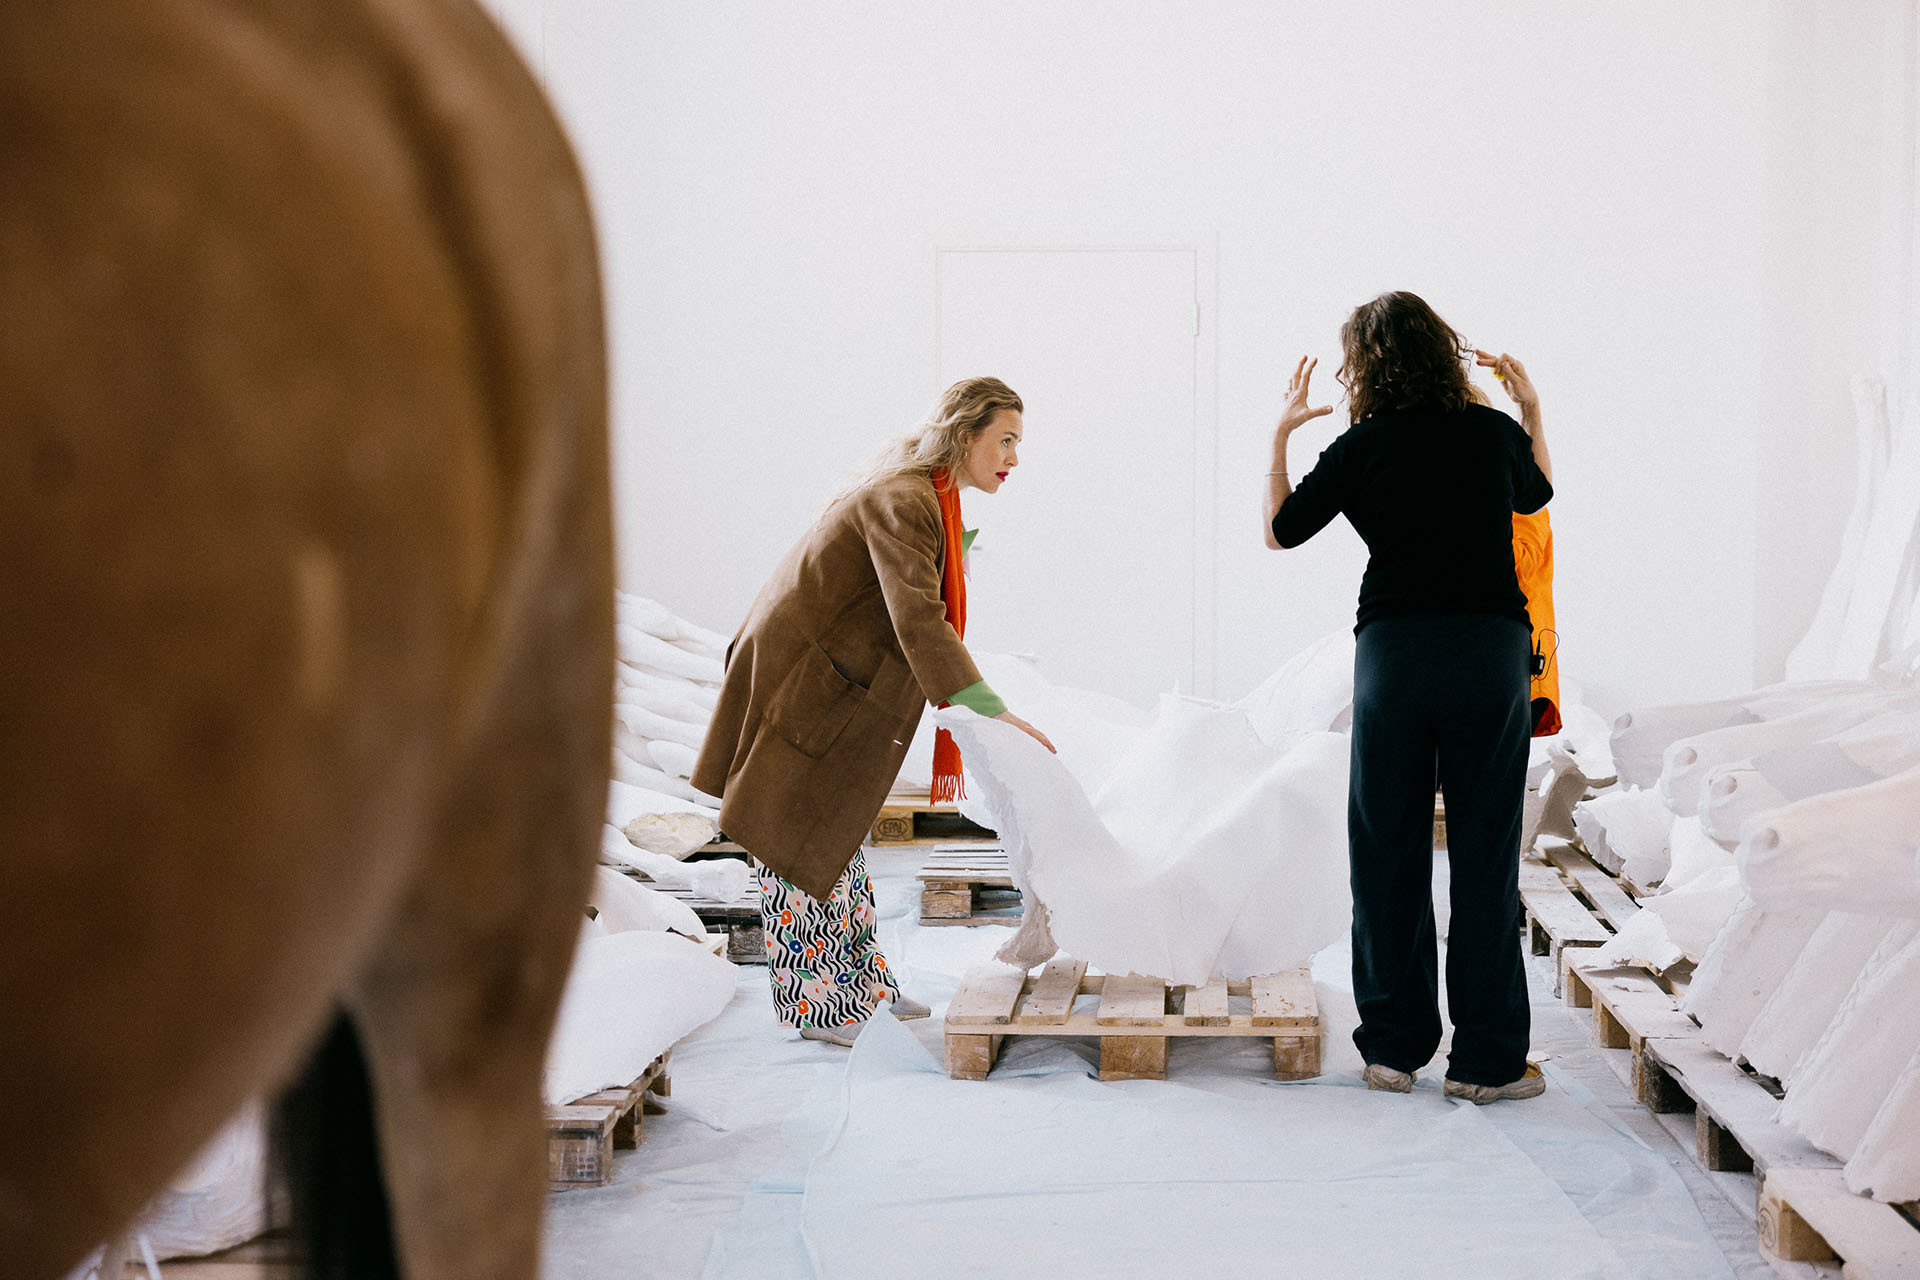 Ragnhild Brochmann besøker Vibeke Tandberg i atelieret, hvor Tandberg viser fram sine store hesteskulpturer.